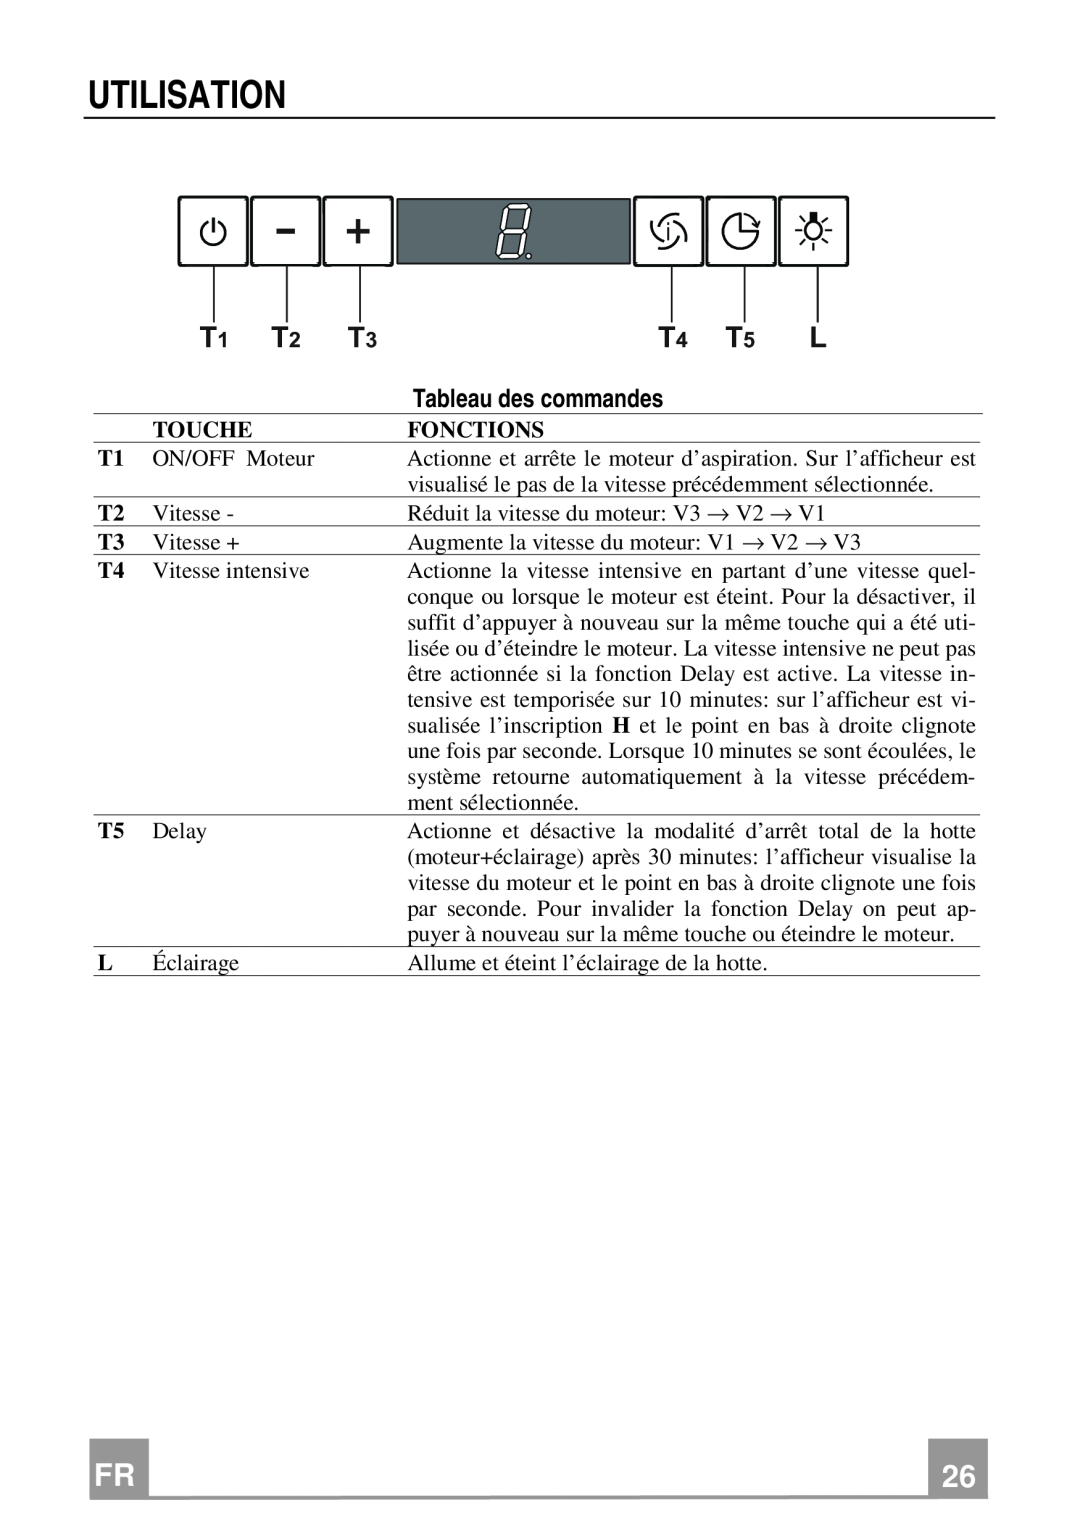 Franke Consumer Products FCH 906 manual Utilisation, Tableau des commandes 